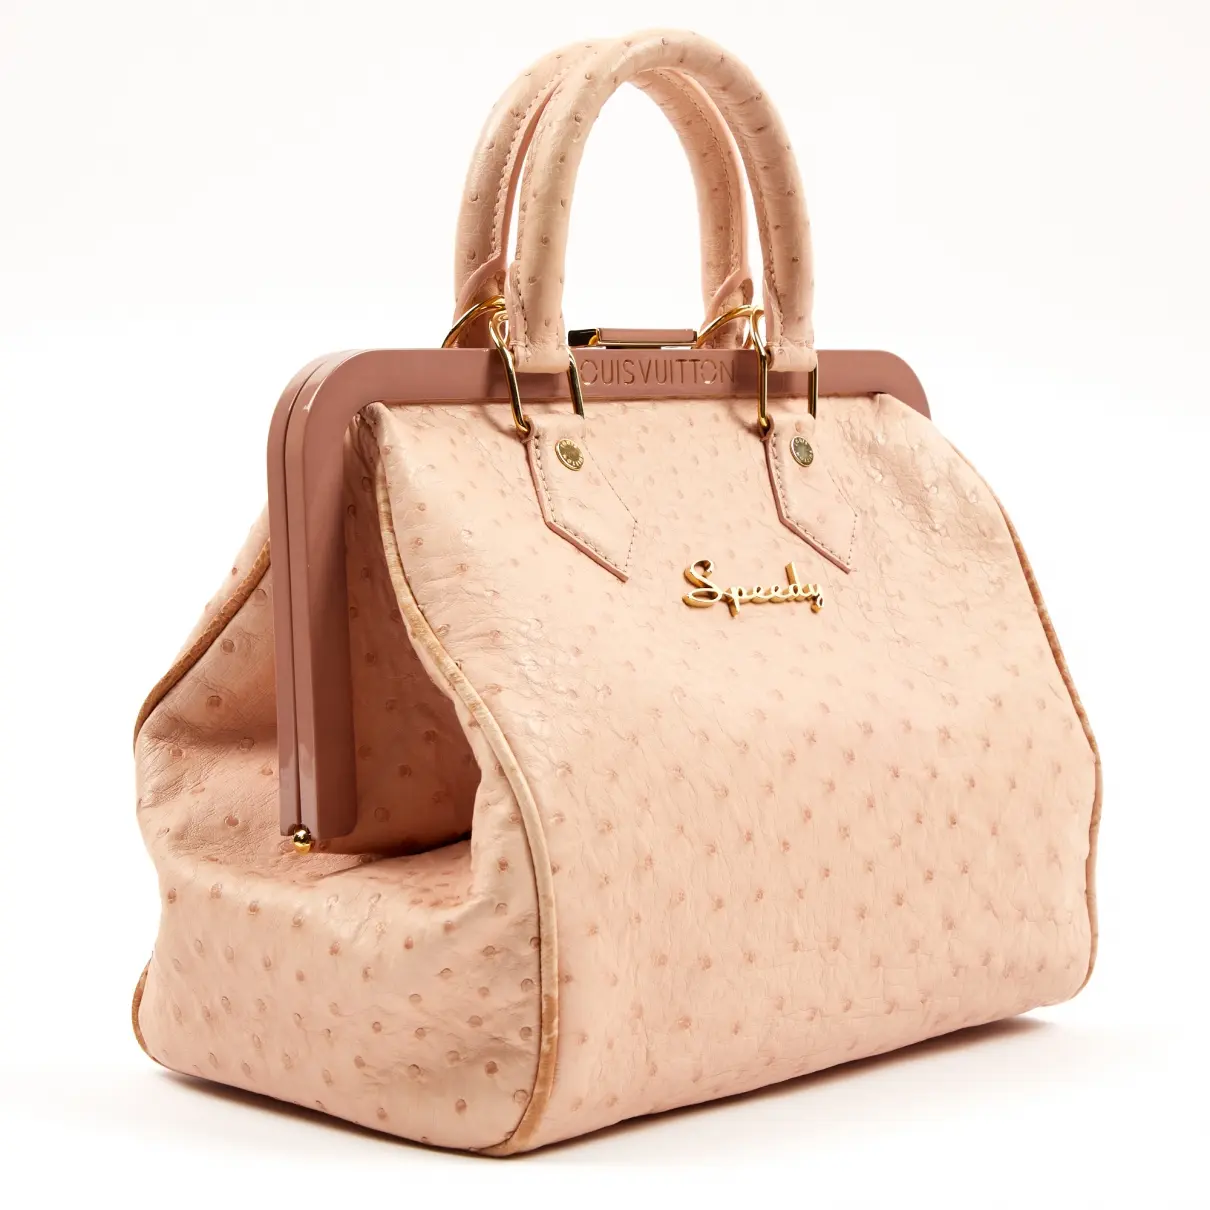 Louis Vuitton Speedy ostrich handbag for sale